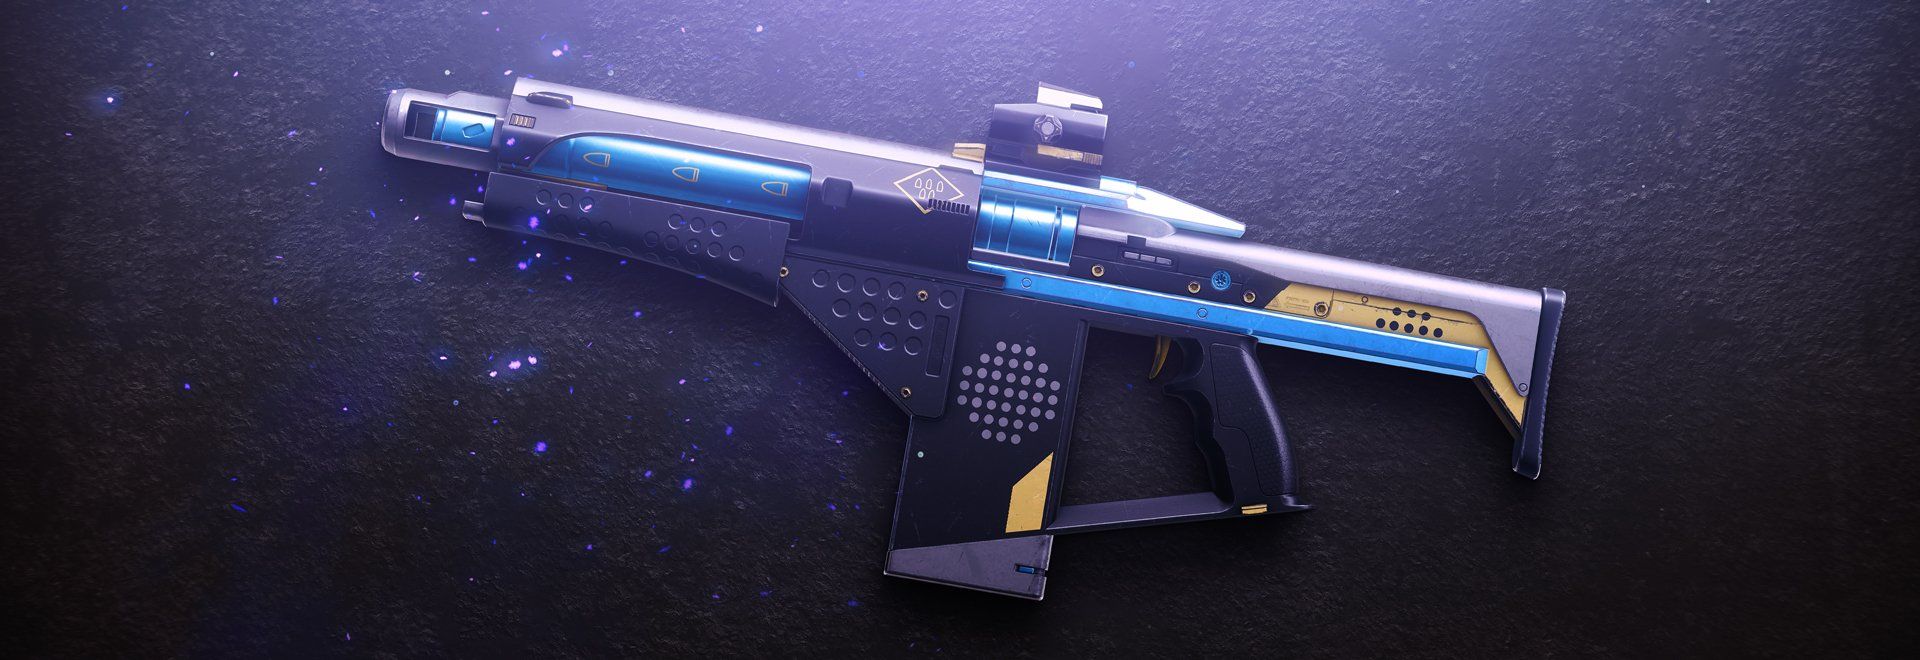 Destiny 2 Null Composure Ritual Fusion Rifle